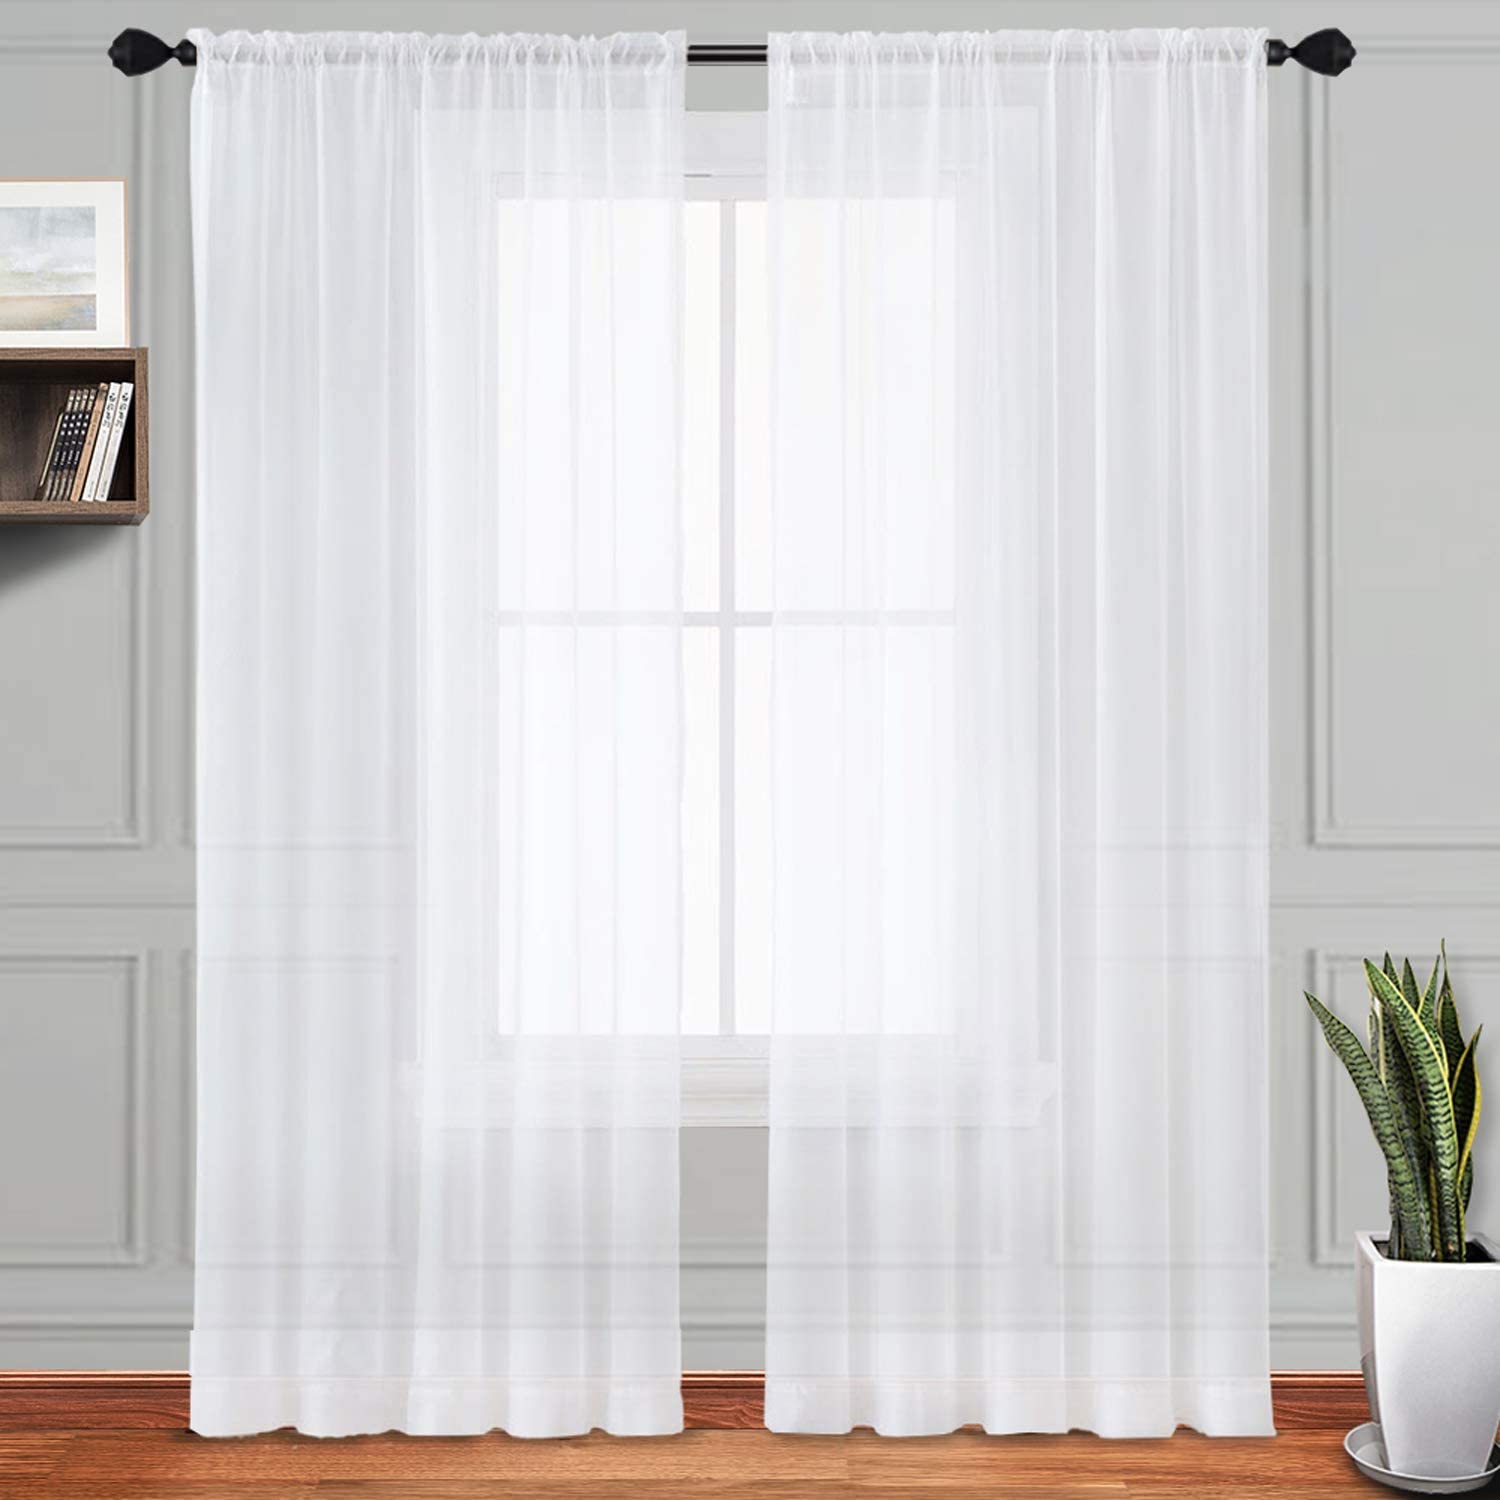 Clean White Curtain